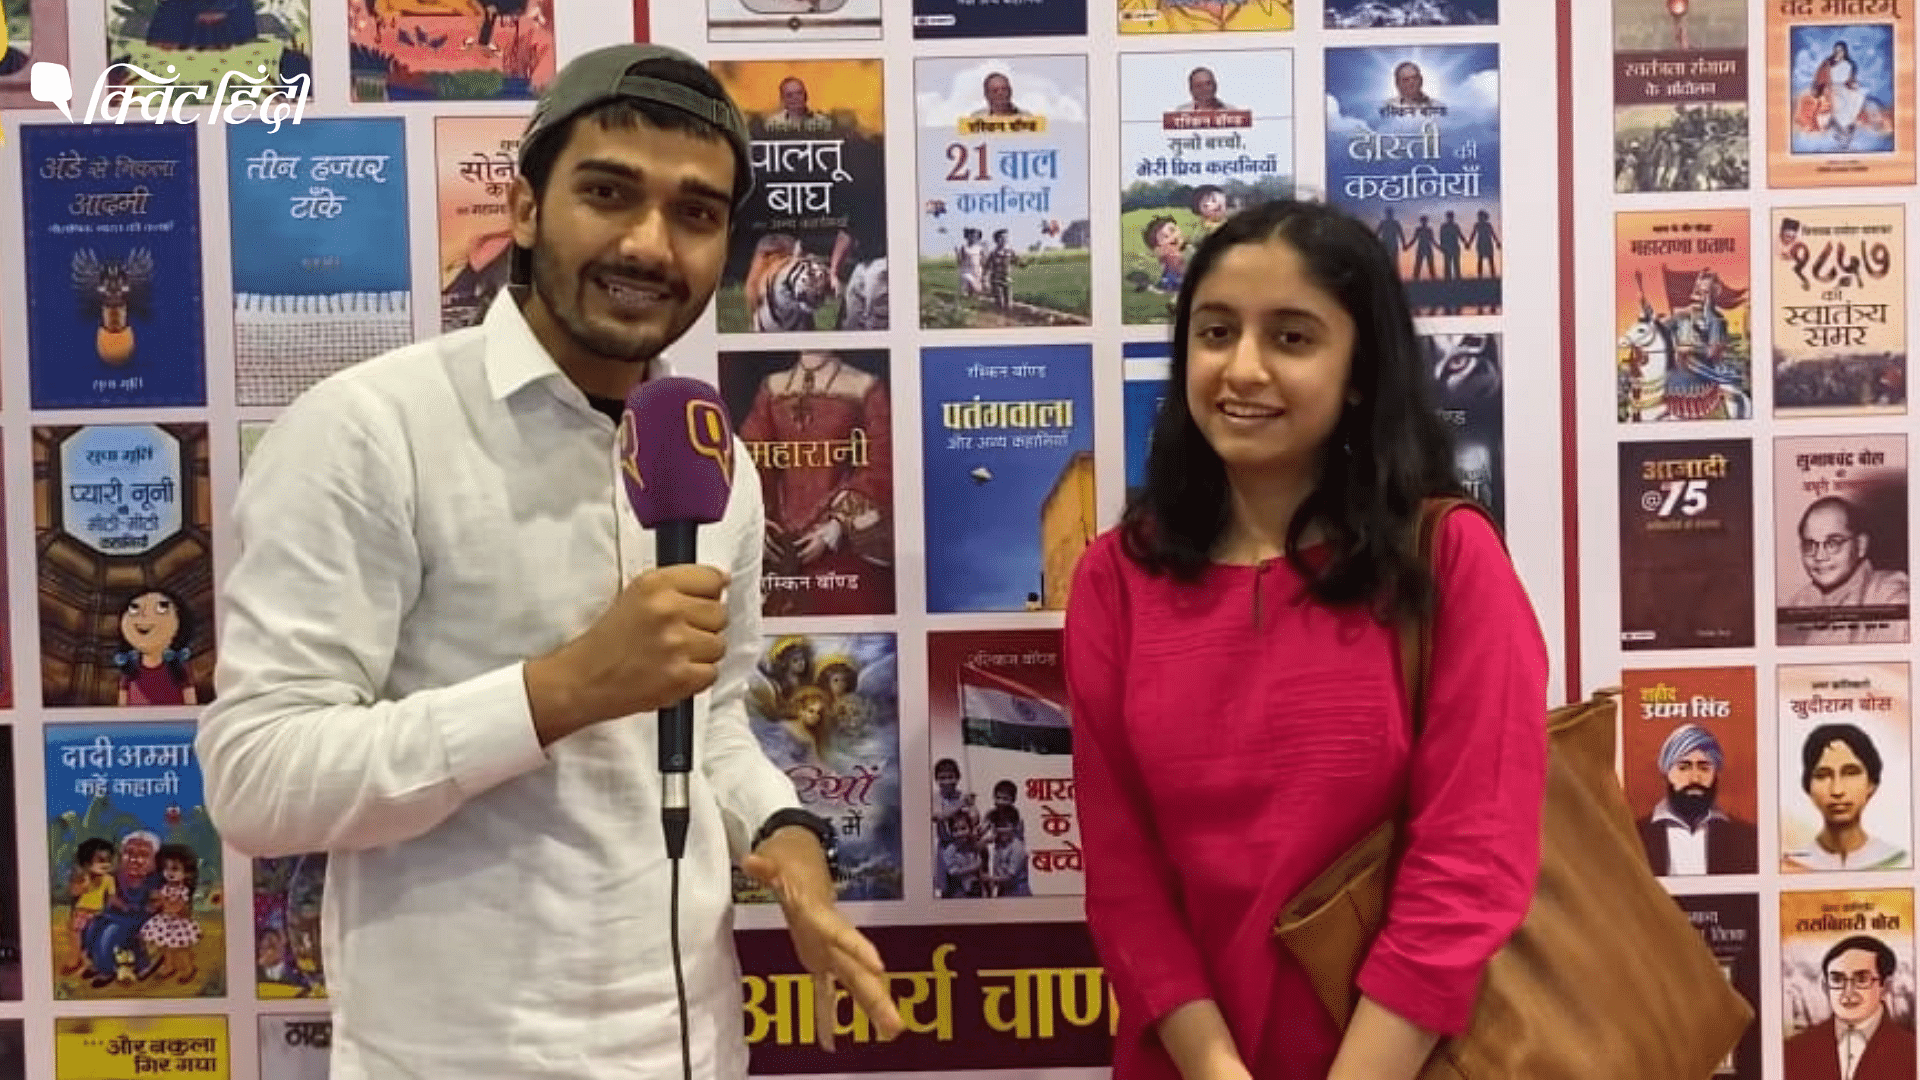 <div class="paragraphs"><p>Delhi World Book Fair: देश के अलग-अलग हिस्सों से आए लोगों ने बताया मेले का अनुभव</p></div>